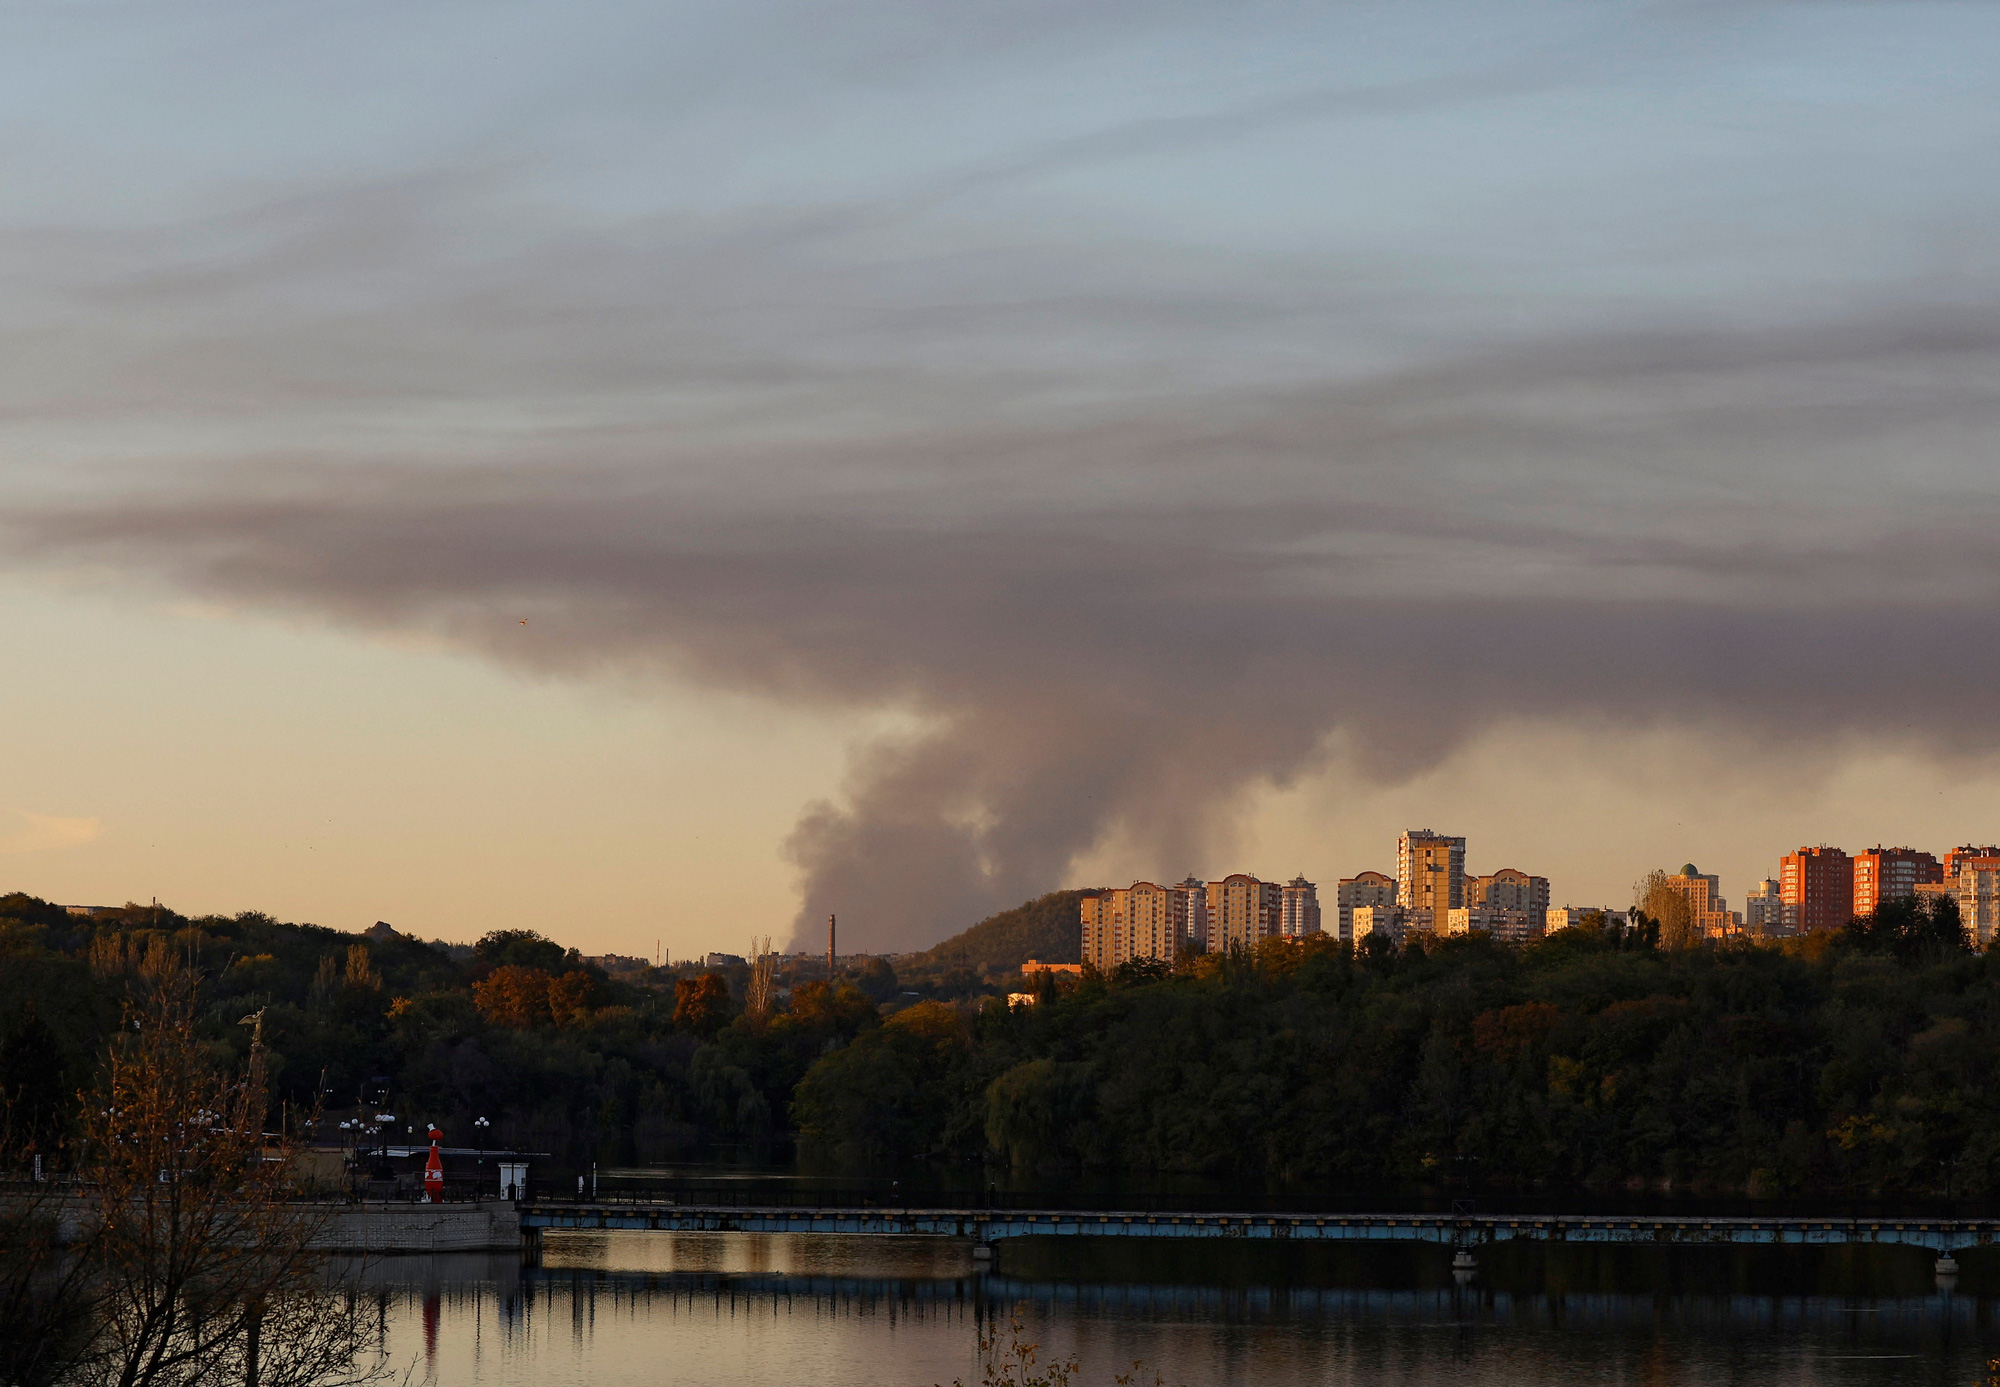 ควันไฟเพิ่มขึ้นในภูมิภาค Avdiivka เมื่อวันที่ 11 ตุลาคม ภาพถ่ายจากภูมิภาคโดเนตสค์ของยูเครนที่ถูกรัสเซียผนวกในปี 2565 - ภาพถ่าย: REUTERS